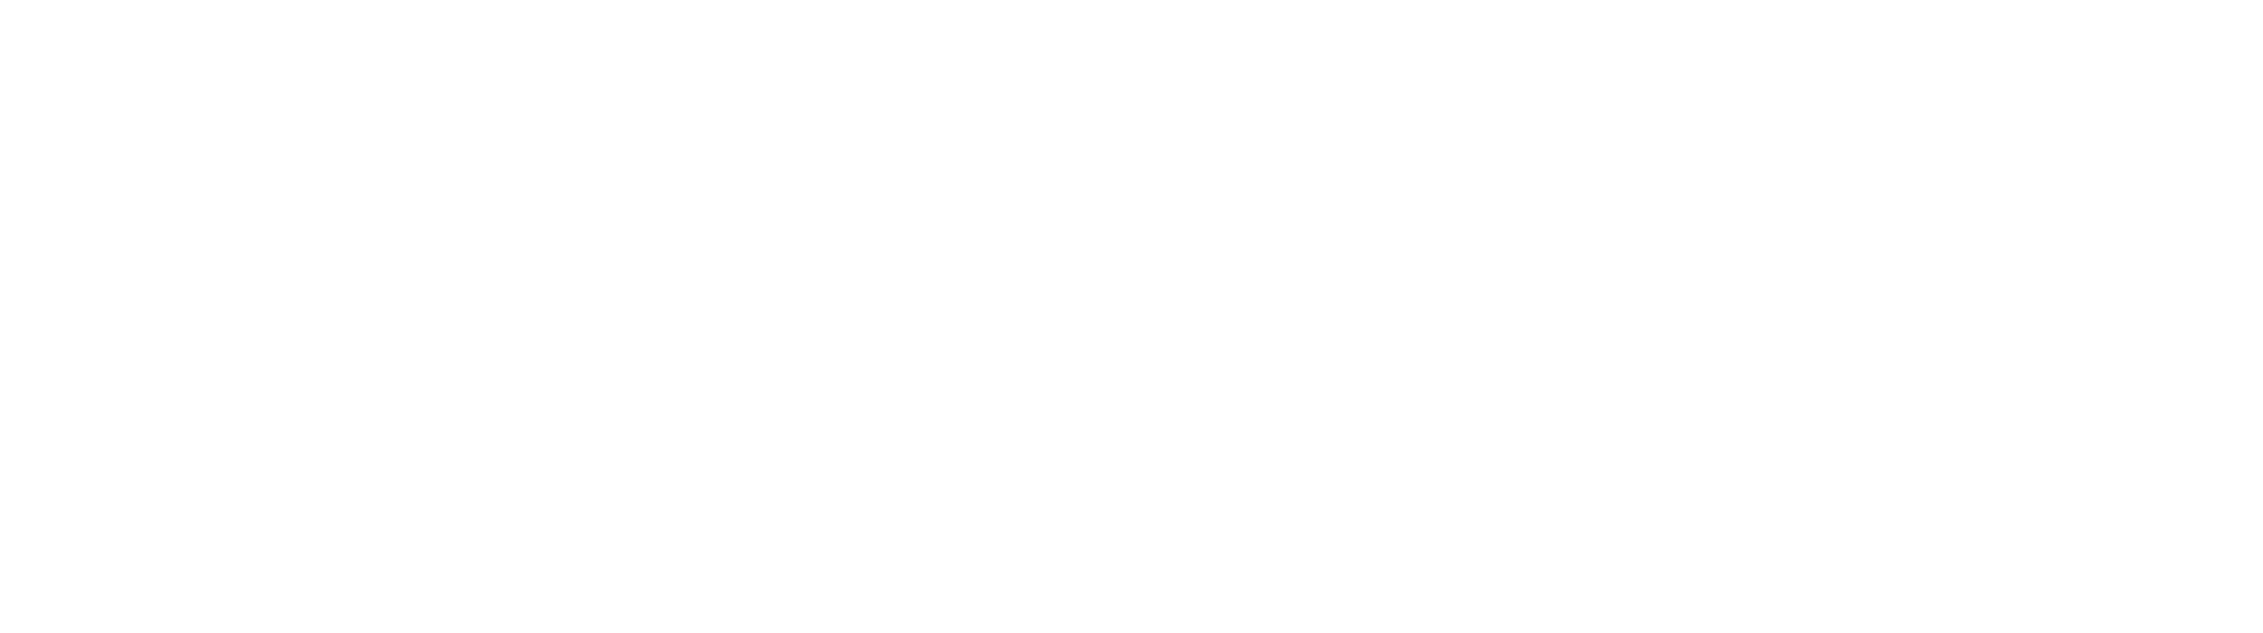 DermTech